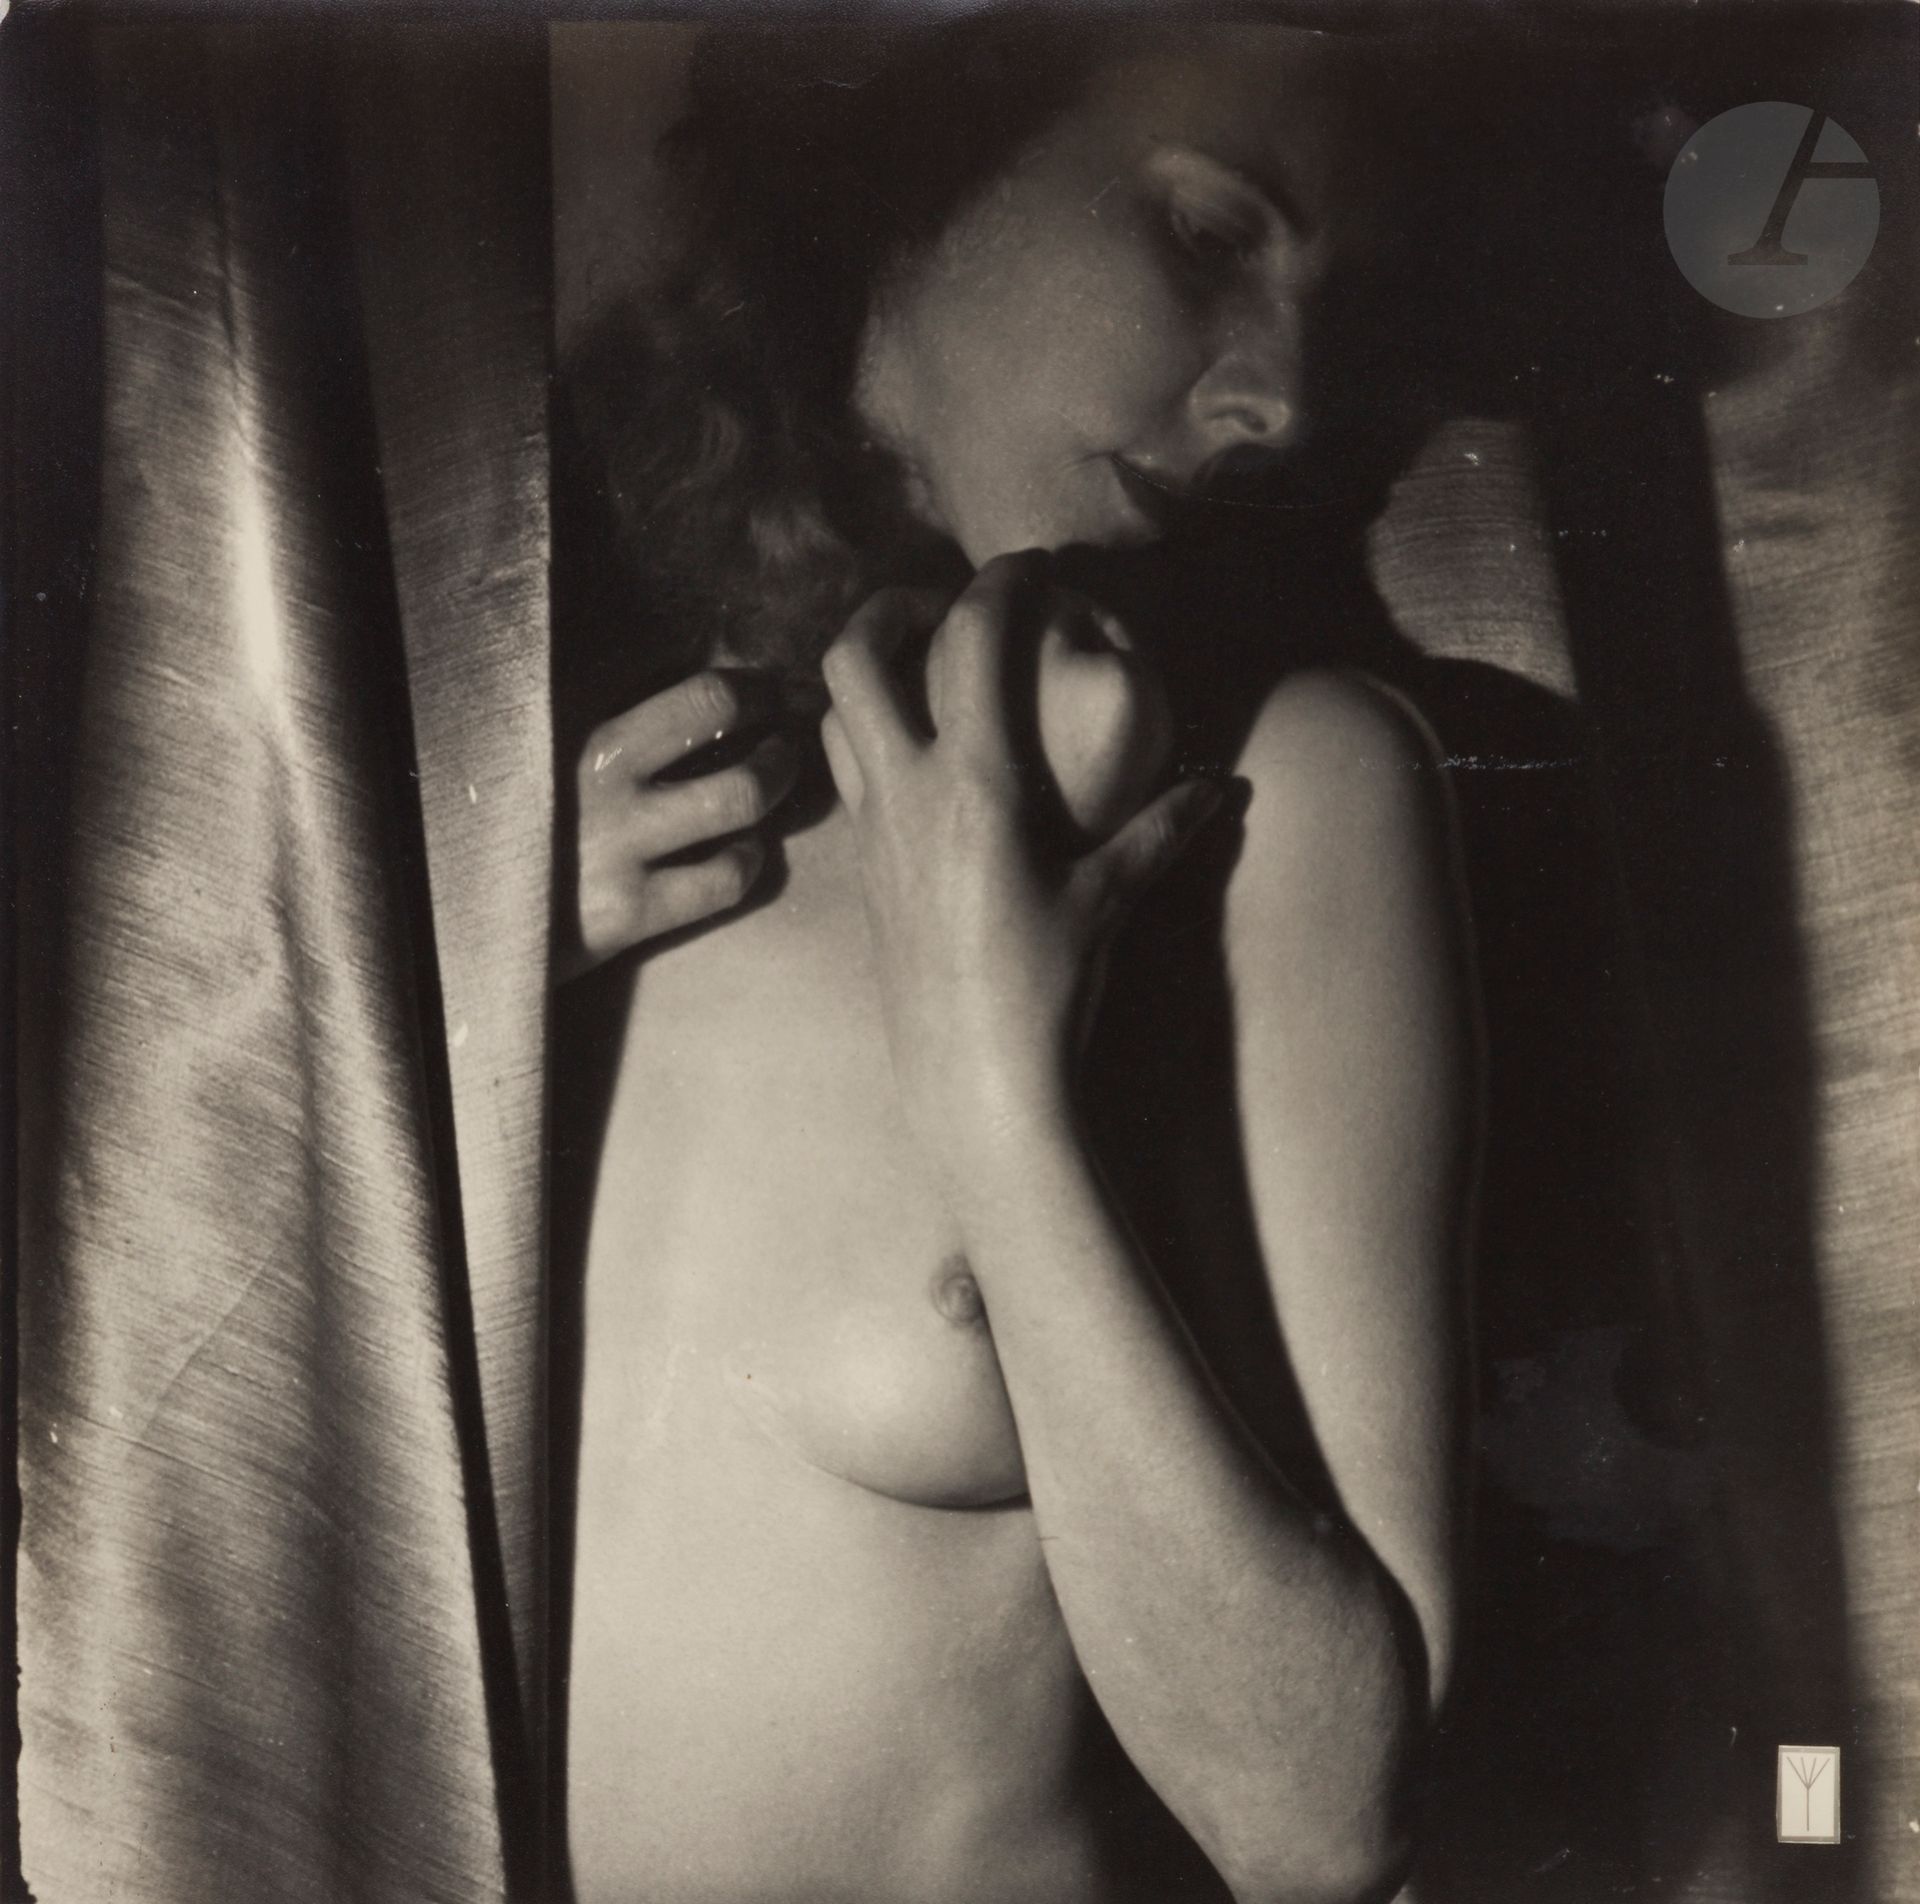 Null 维利-泽尔克(1902-1989)
女性裸体（Leni Riefenstahl？）与苹果，约1930年。 
Agfa纸上的复古银版画，在右下角的空白处&hellip;